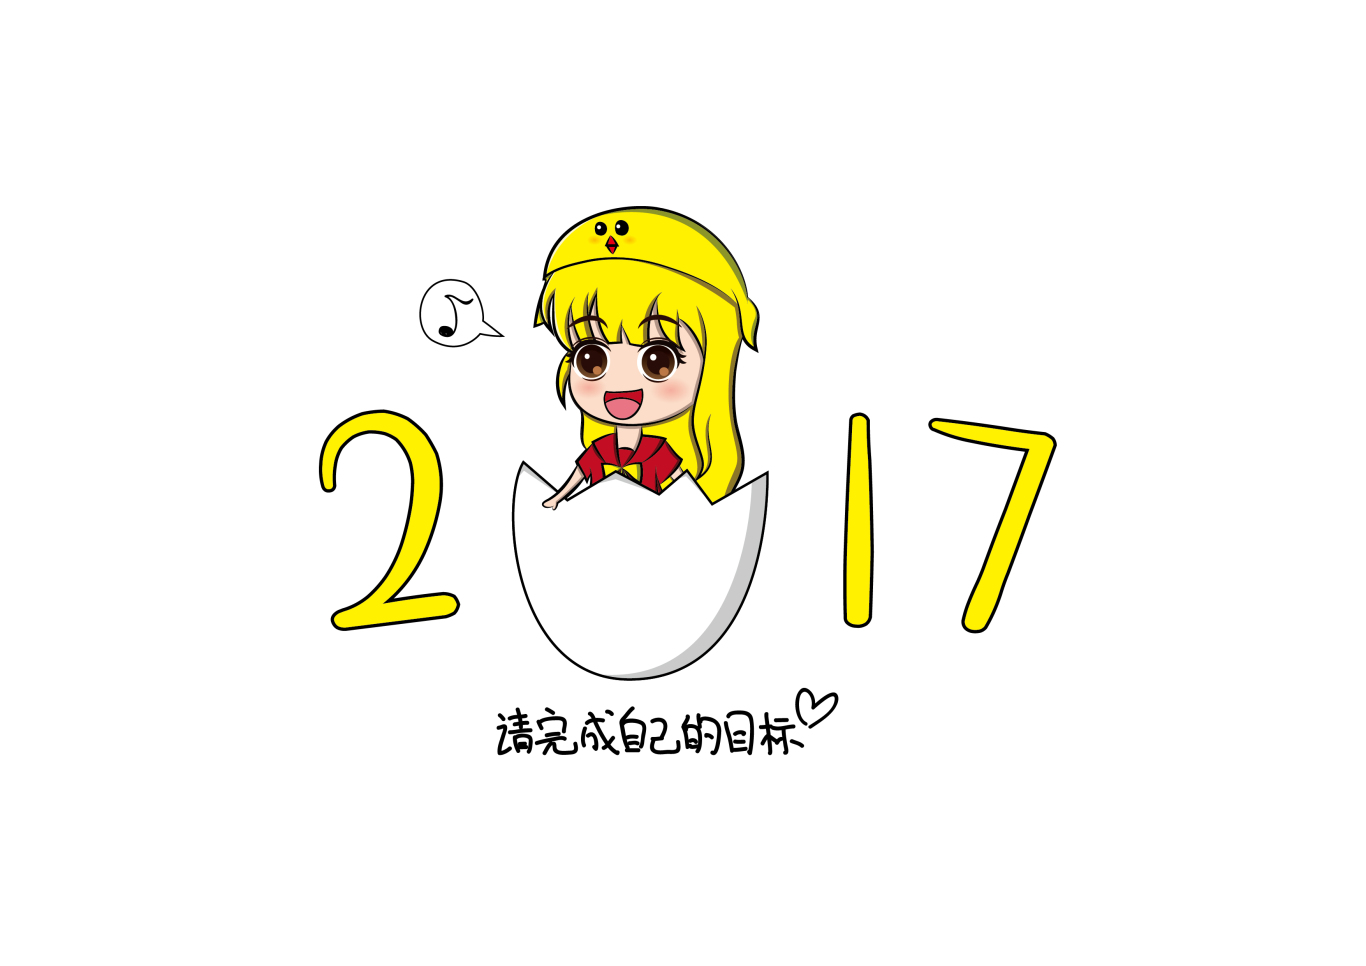 2017鸡年吉祥物图0